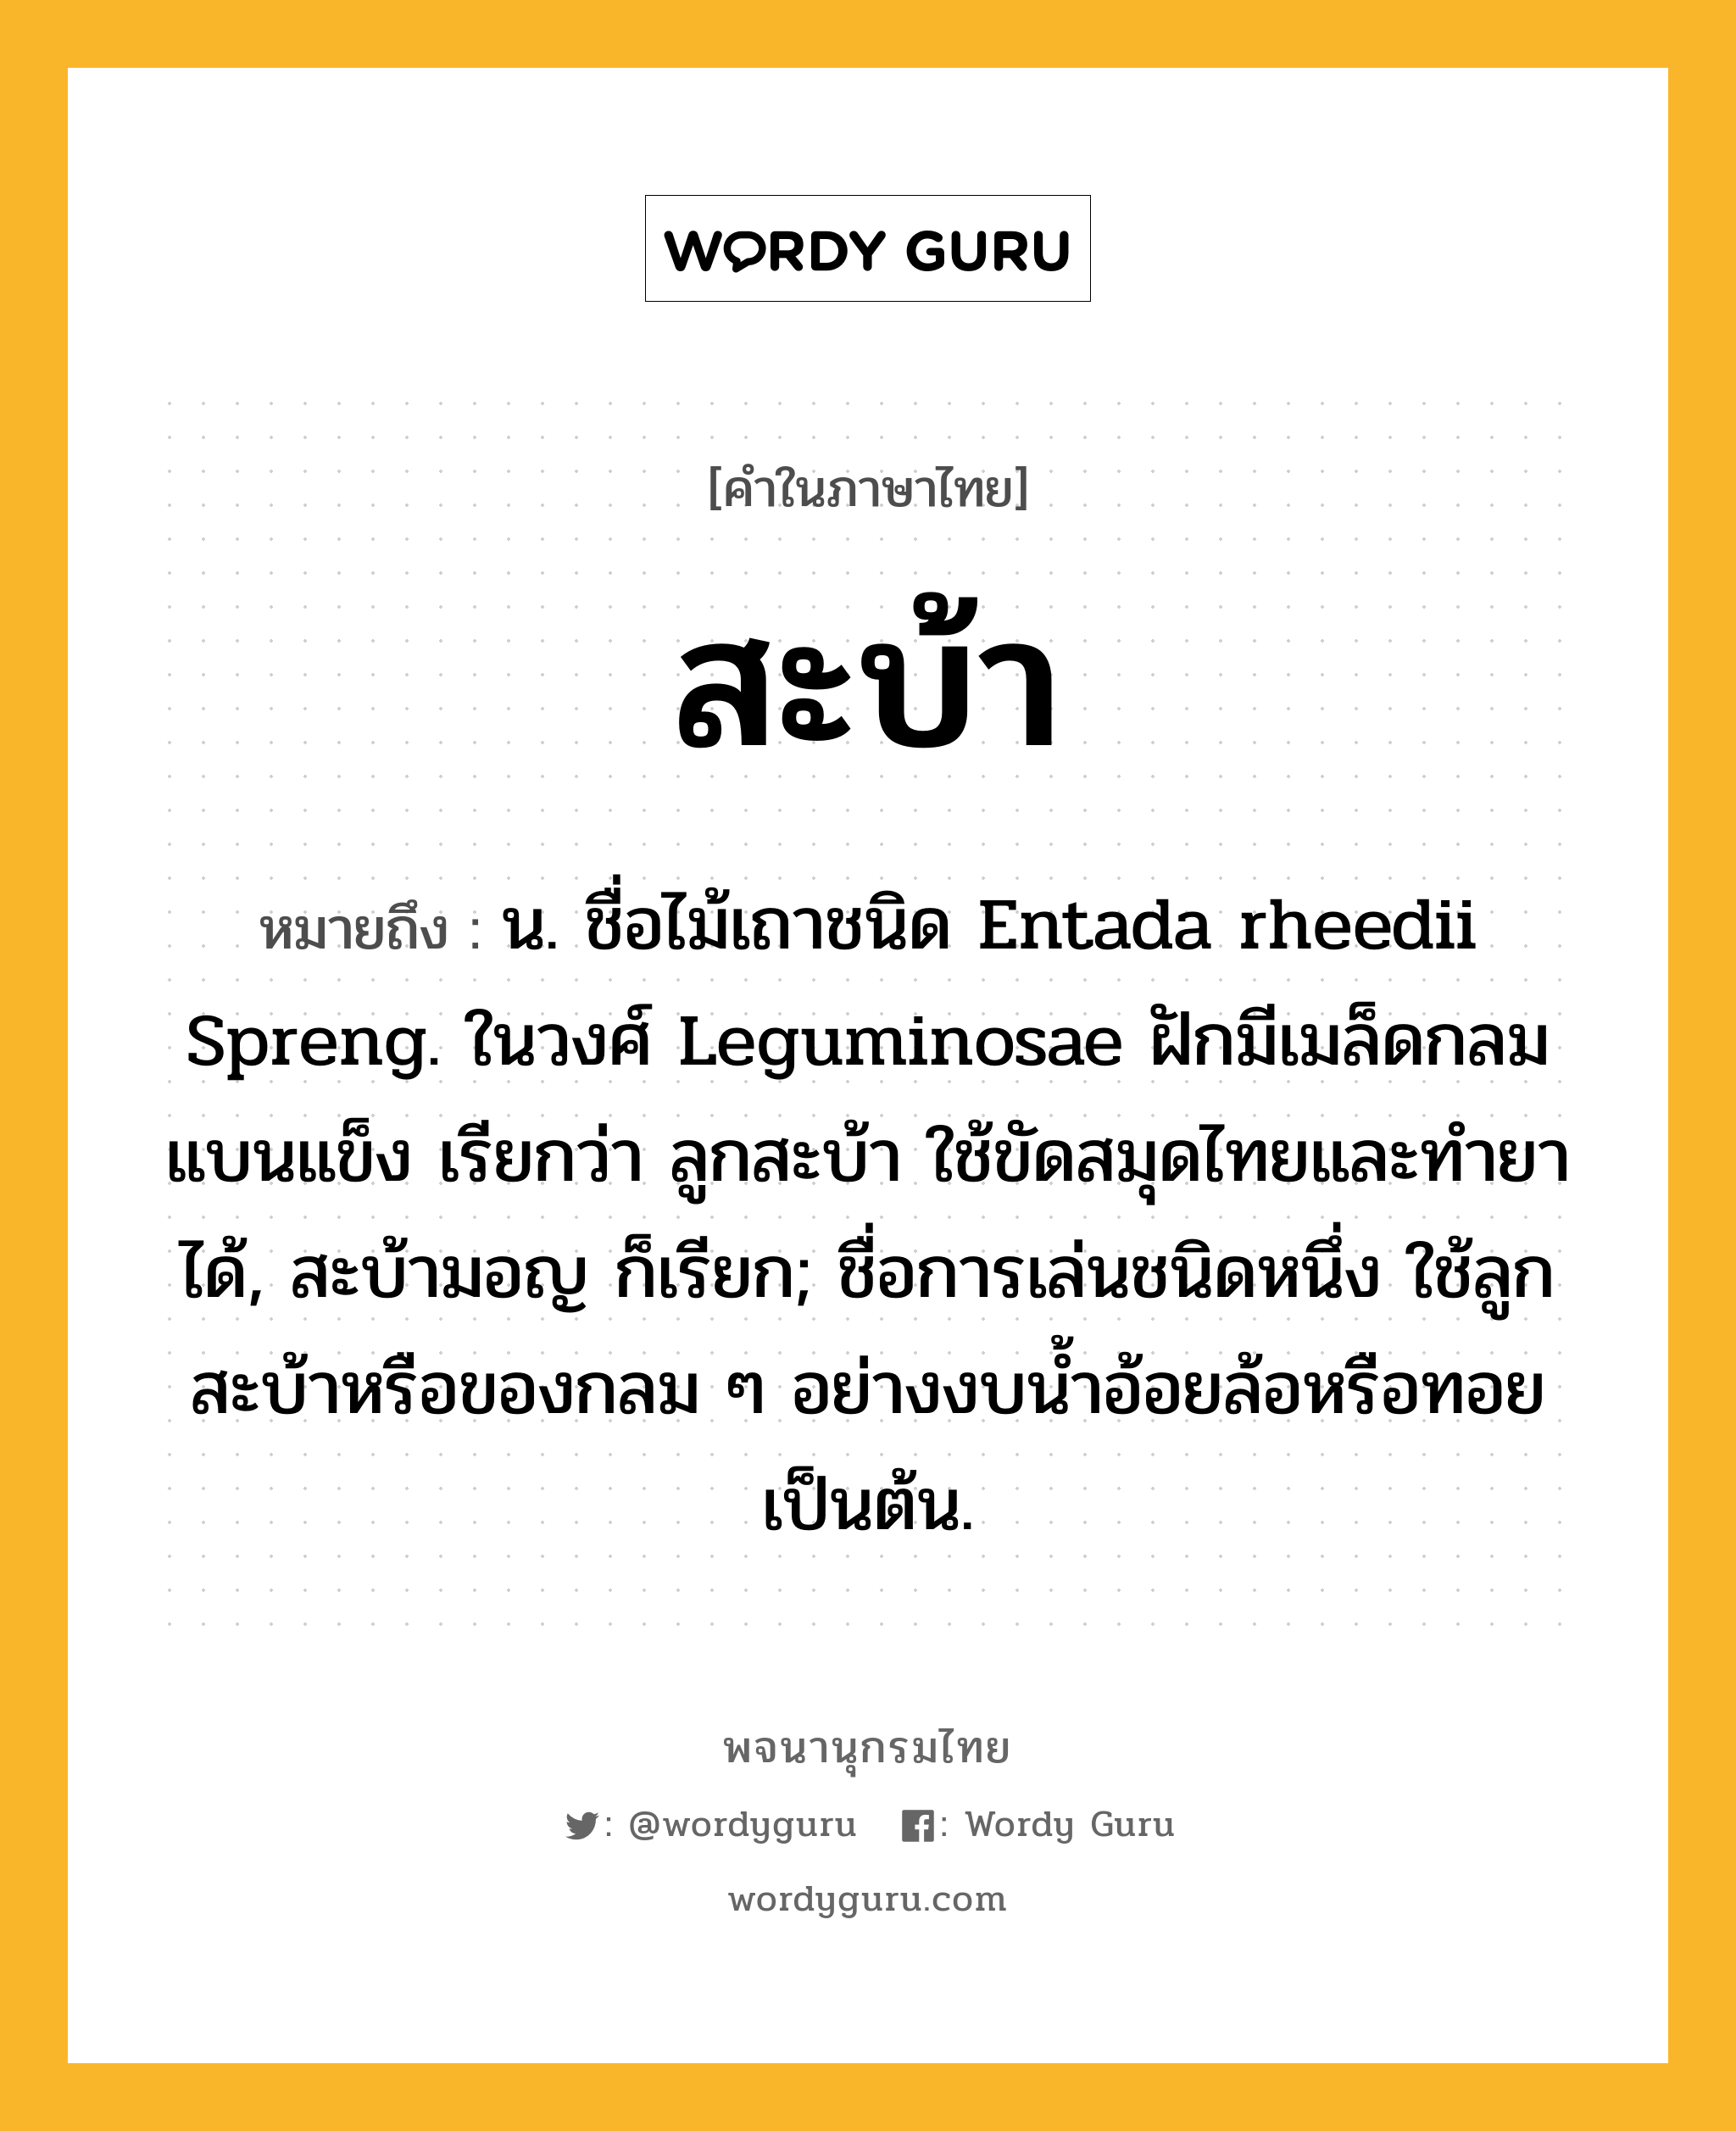 สะบ้า ความหมาย หมายถึงอะไร?, คำในภาษาไทย สะบ้า หมายถึง น. ชื่อไม้เถาชนิด Entada rheedii Spreng. ในวงศ์ Leguminosae ฝักมีเมล็ดกลมแบนแข็ง เรียกว่า ลูกสะบ้า ใช้ขัดสมุดไทยและทํายาได้, สะบ้ามอญ ก็เรียก; ชื่อการเล่นชนิดหนึ่ง ใช้ลูกสะบ้าหรือของกลม ๆ อย่างงบนํ้าอ้อยล้อหรือทอยเป็นต้น.